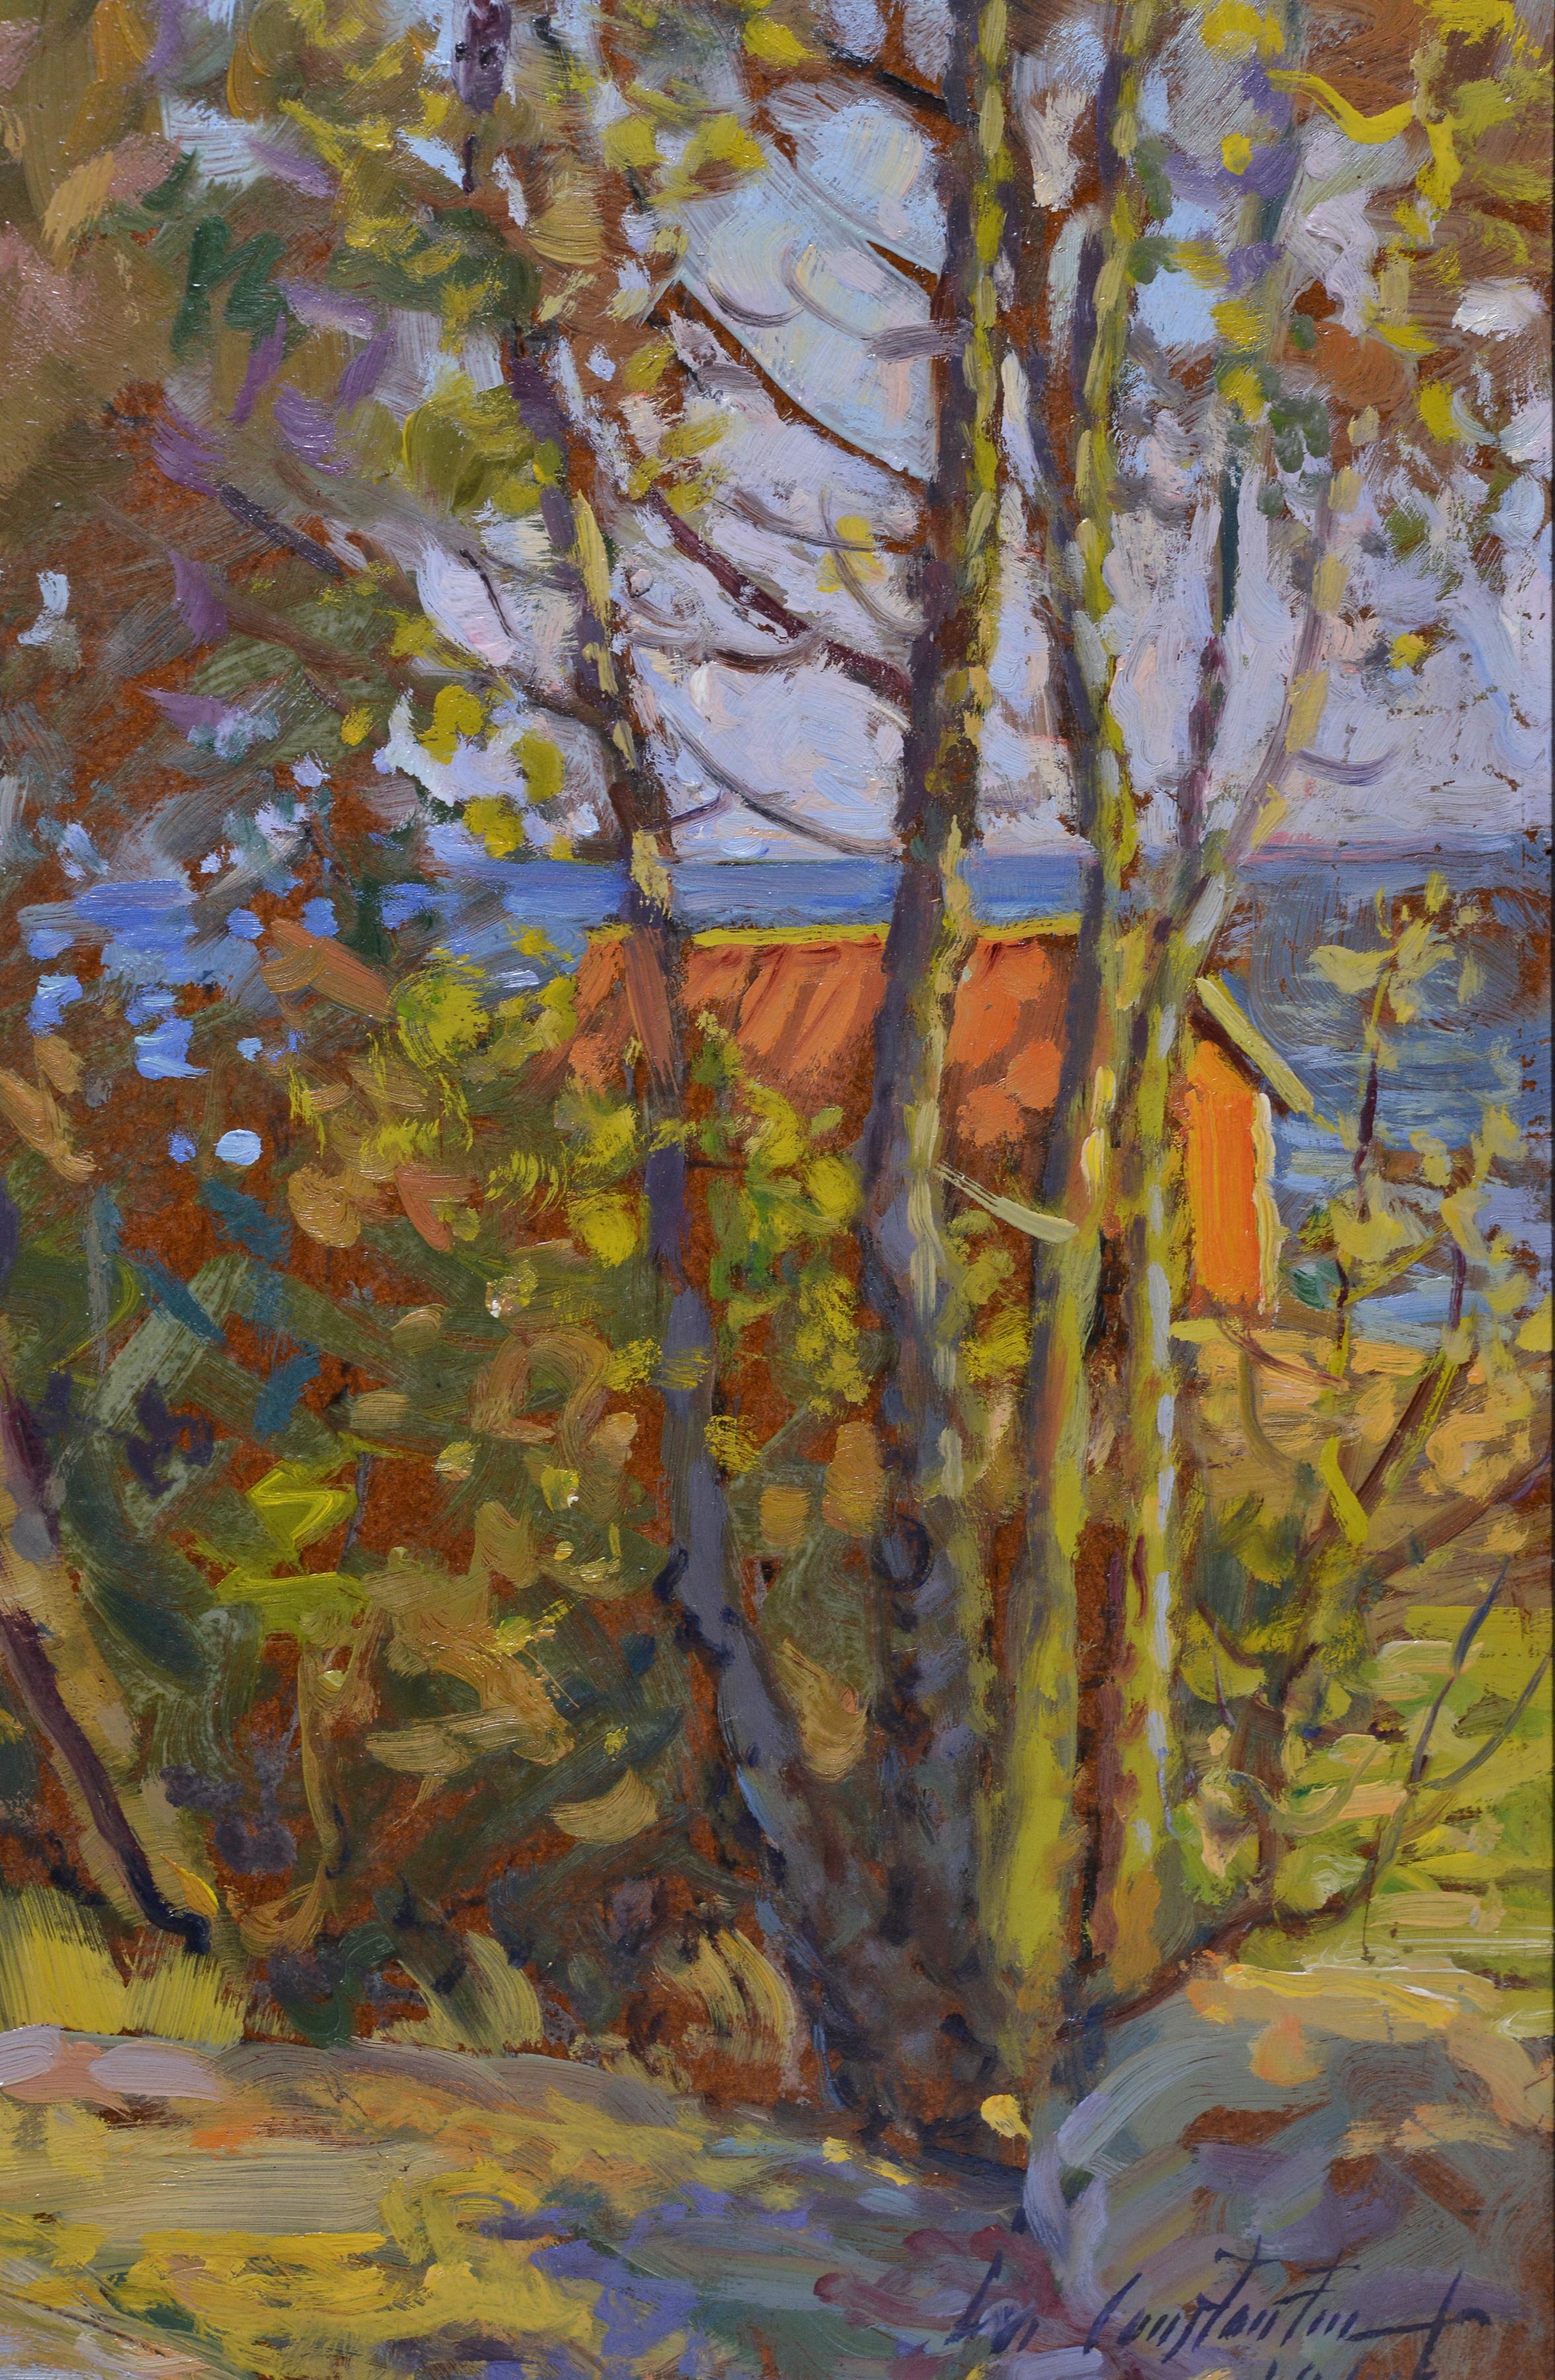 Stockholmer Archipelago-Landschaft 1940, Ölgemälde, bekannter impressionistischer Künstler  (Braun), Landscape Painting, von Ivan Constantin Sannesjö Johansson